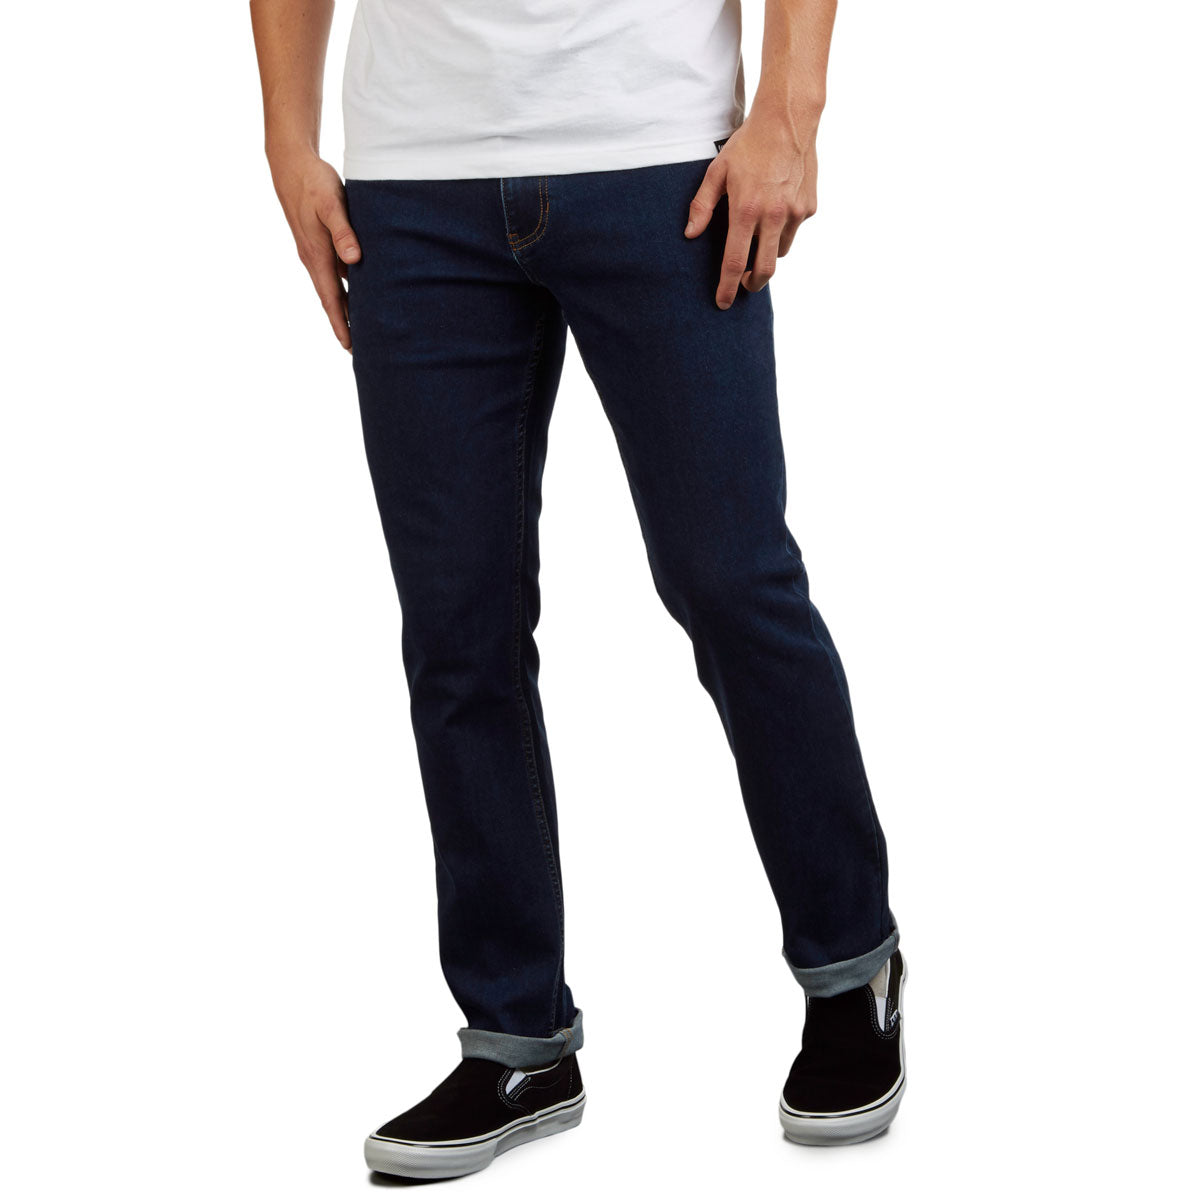 CCS Standard Plus Slim Denim Jeans - Indigo image 4